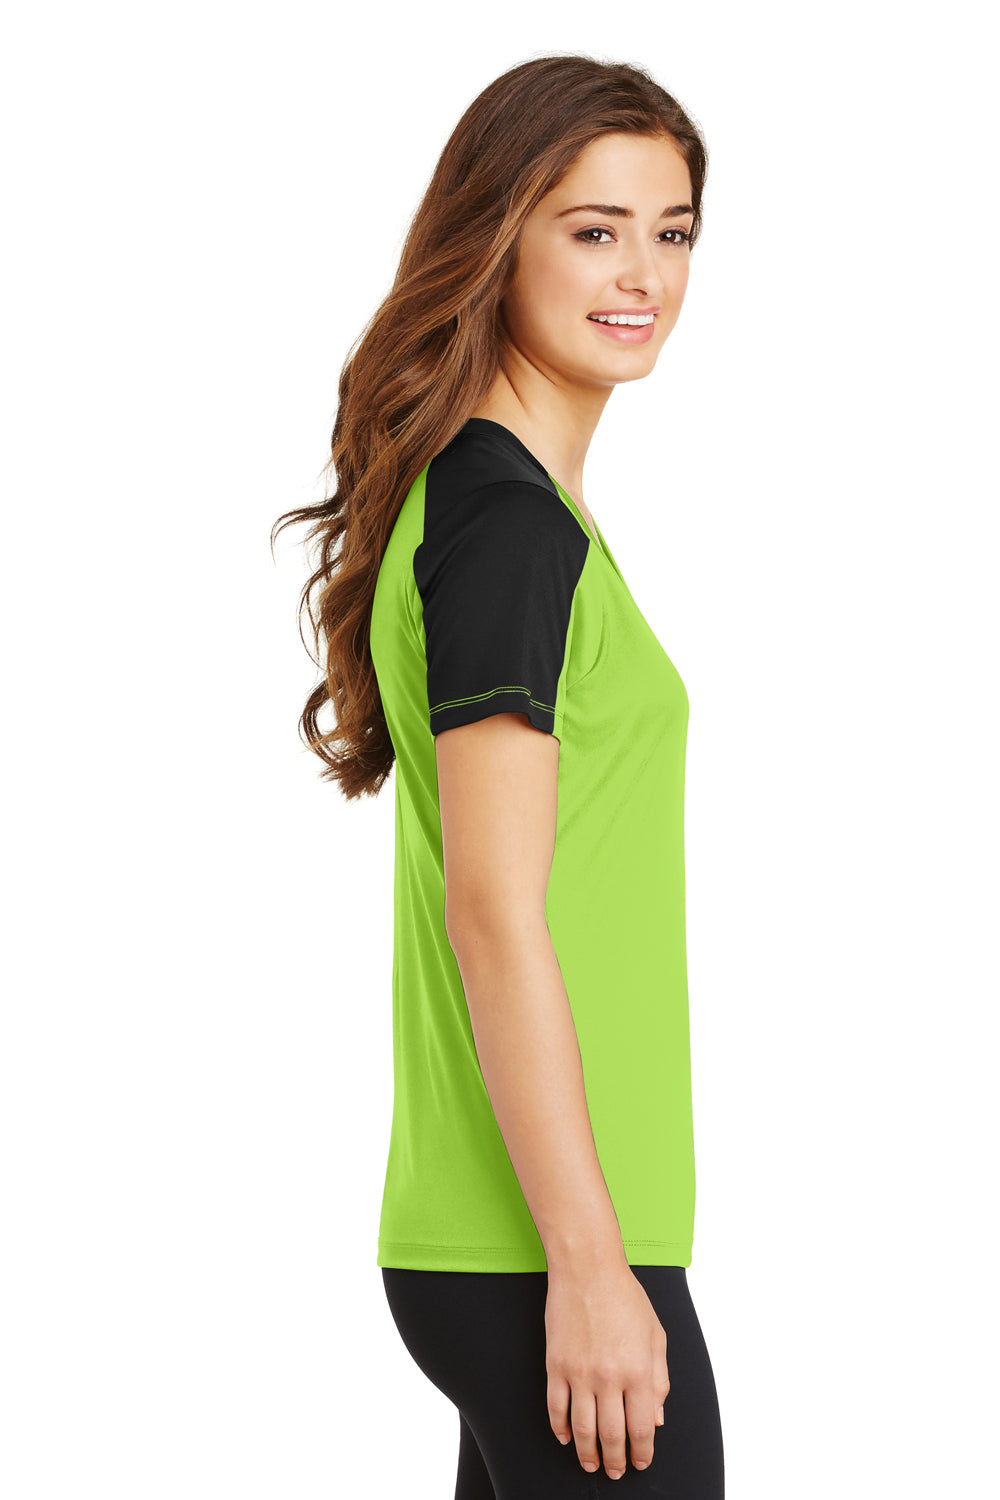 Sport-Tek LST354 Womens Competitor Moisture Wicking Short Sleeve V-Neck T-Shirt Lime Green/Black Side